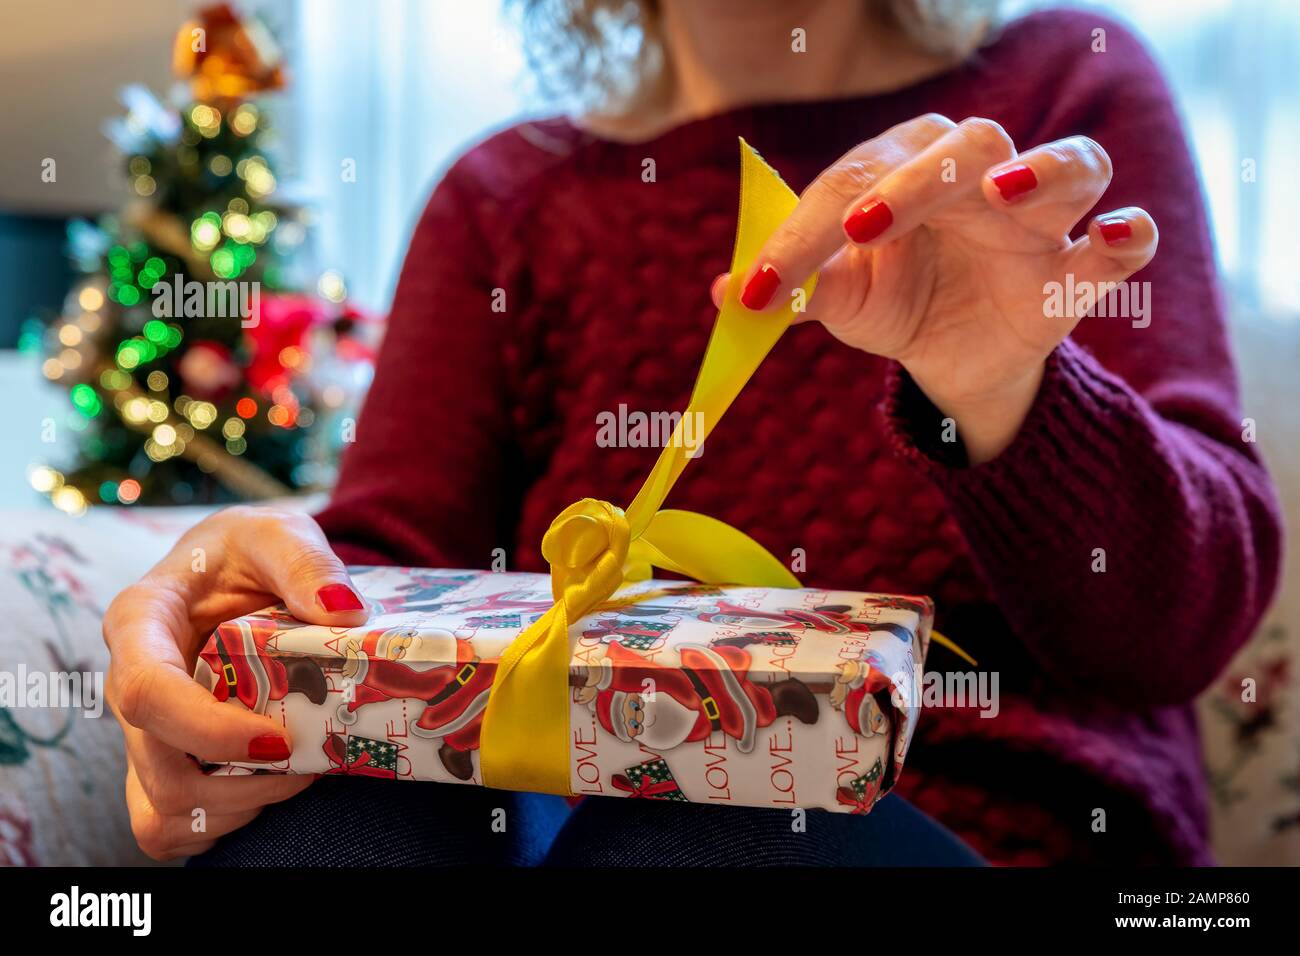 Blonde Frau enthüllt ein Weihnachtsgeschenk mit dem Weihnachtsbaum im Hintergrund, wobei die Lichter aufleuchten Stockfoto